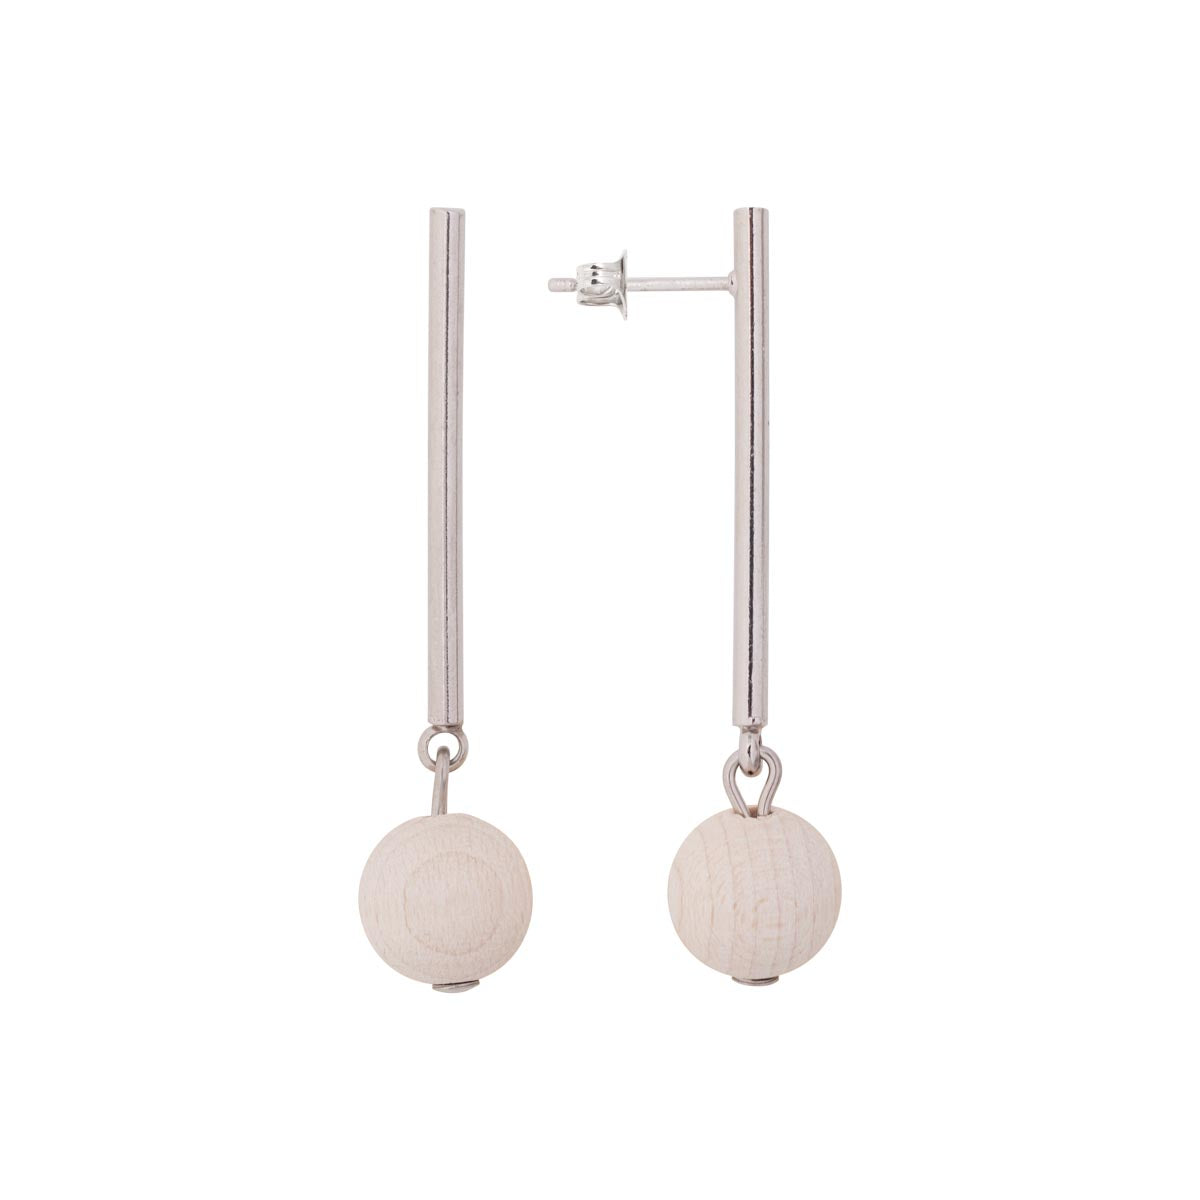 Lilli earrings, ecru and silver